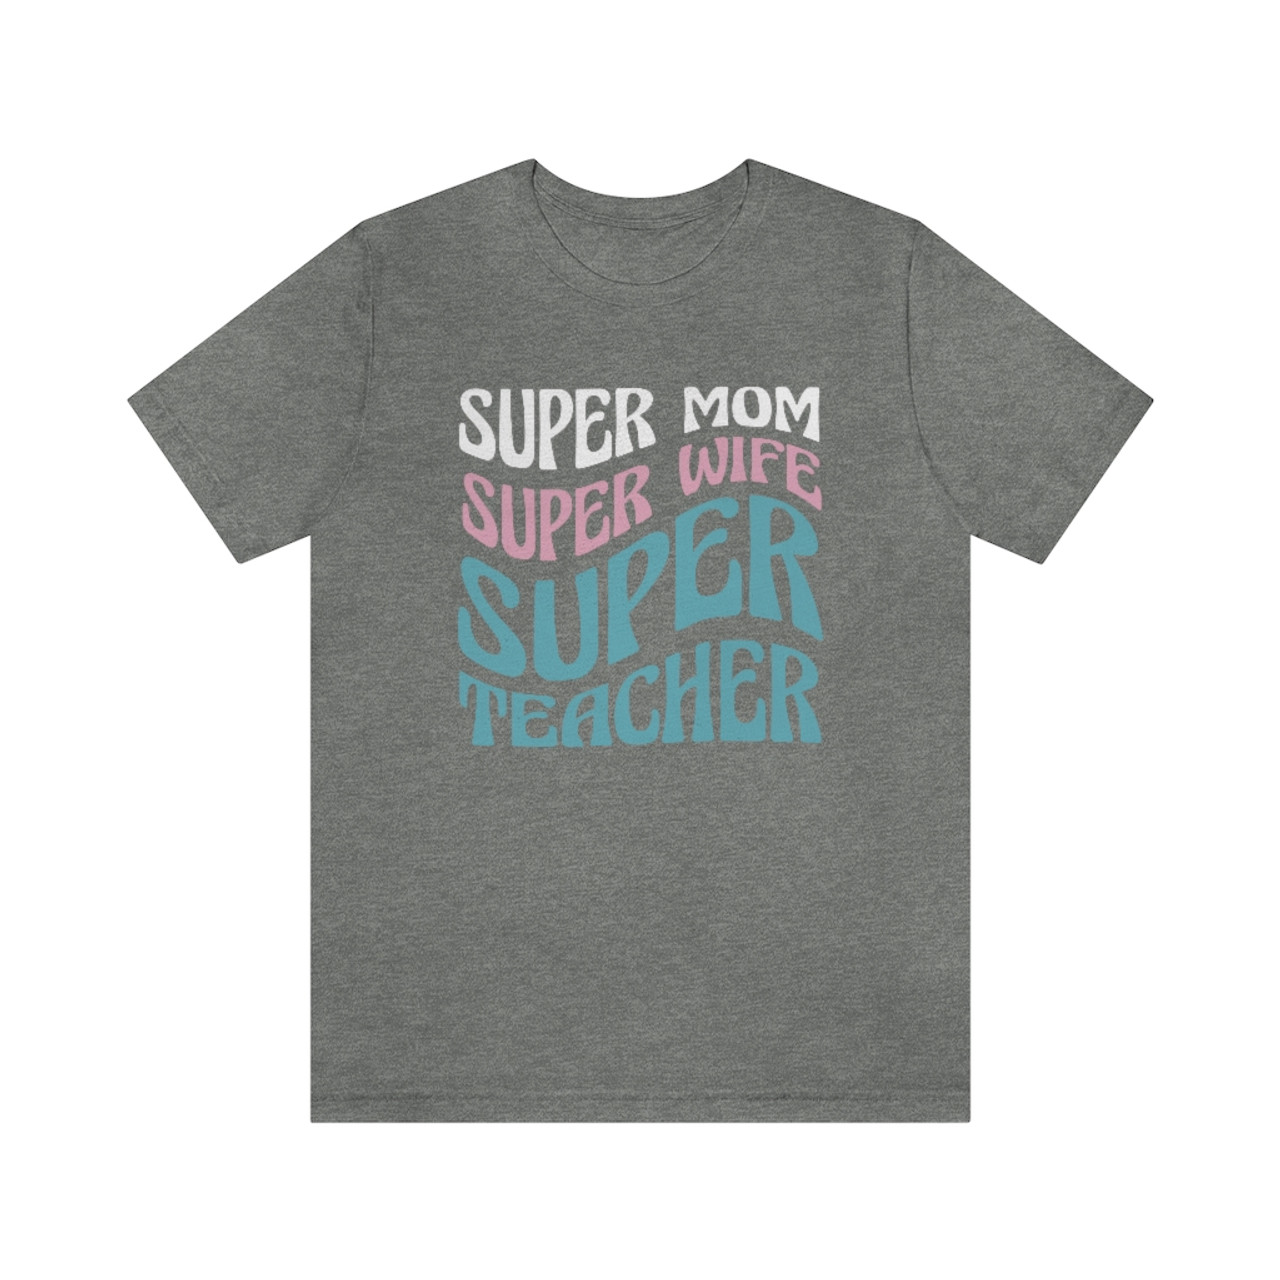 "Super Mom Super Wife Super Teacher" T-Shirt